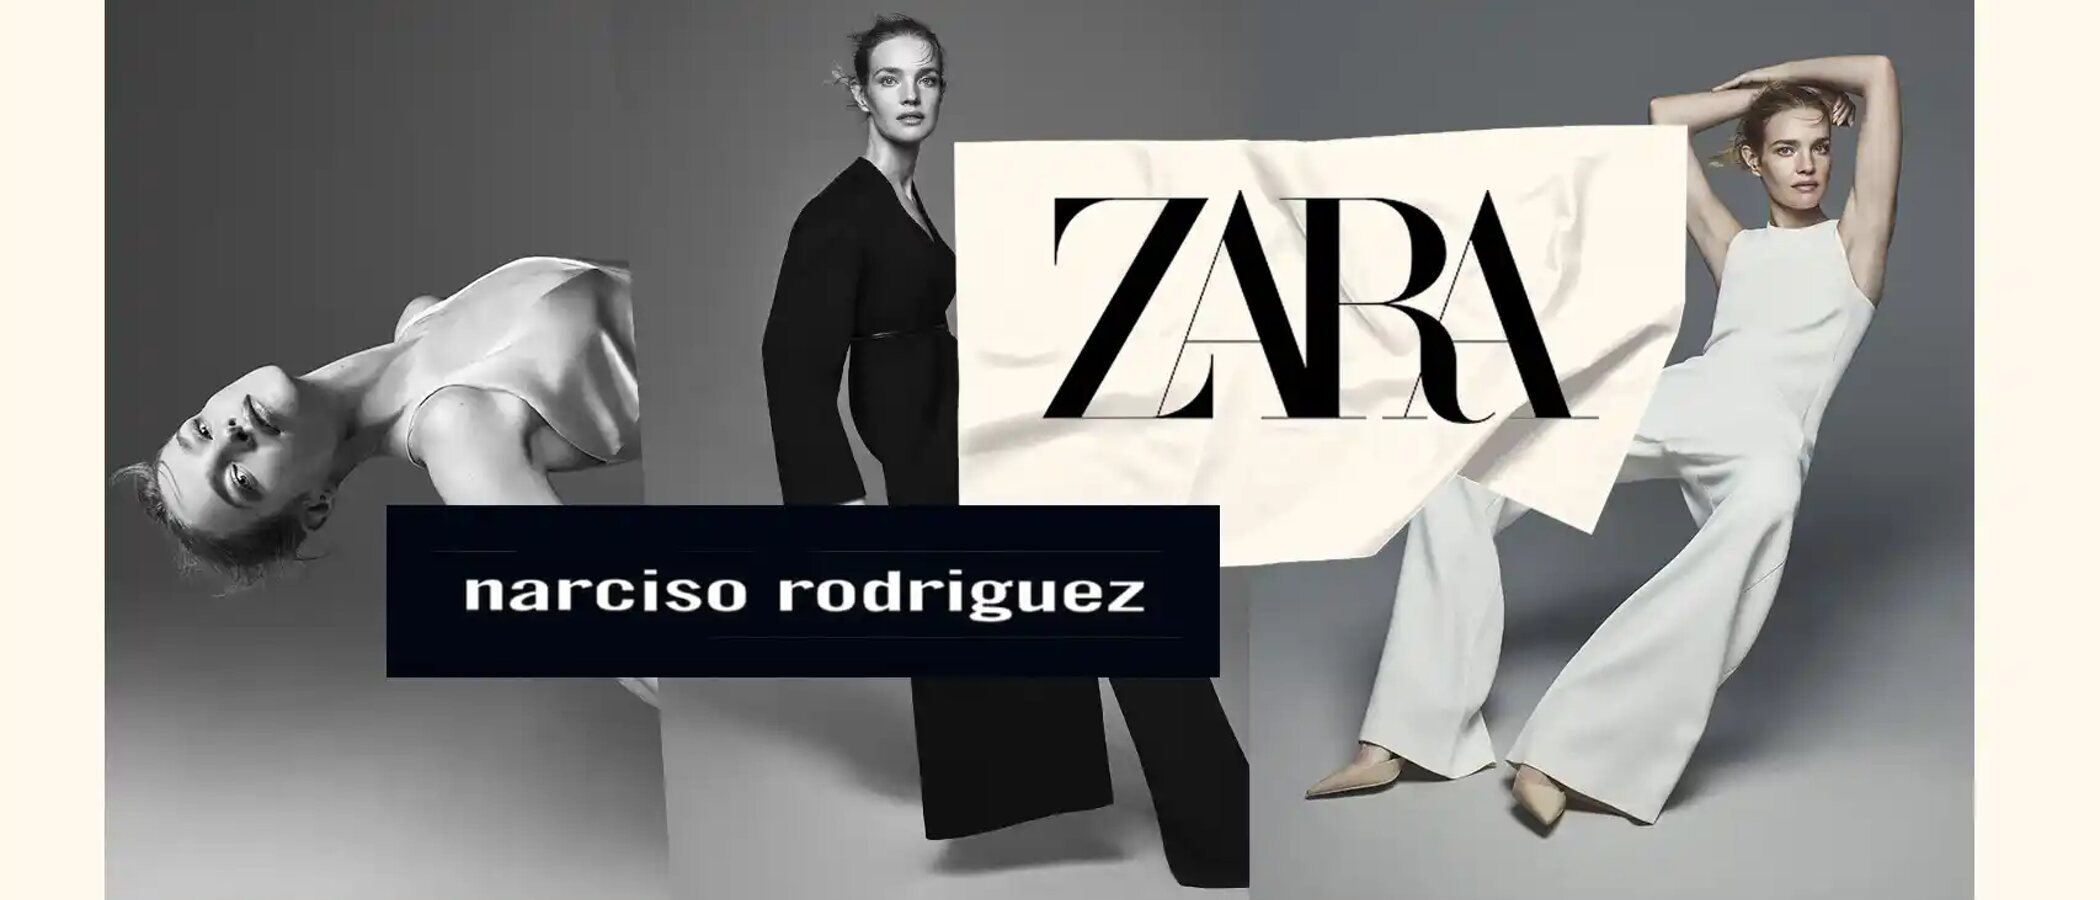 El primer movimiento de Marta Ortega al frente de Zara: colección cápsula con Narciso Rodríguez